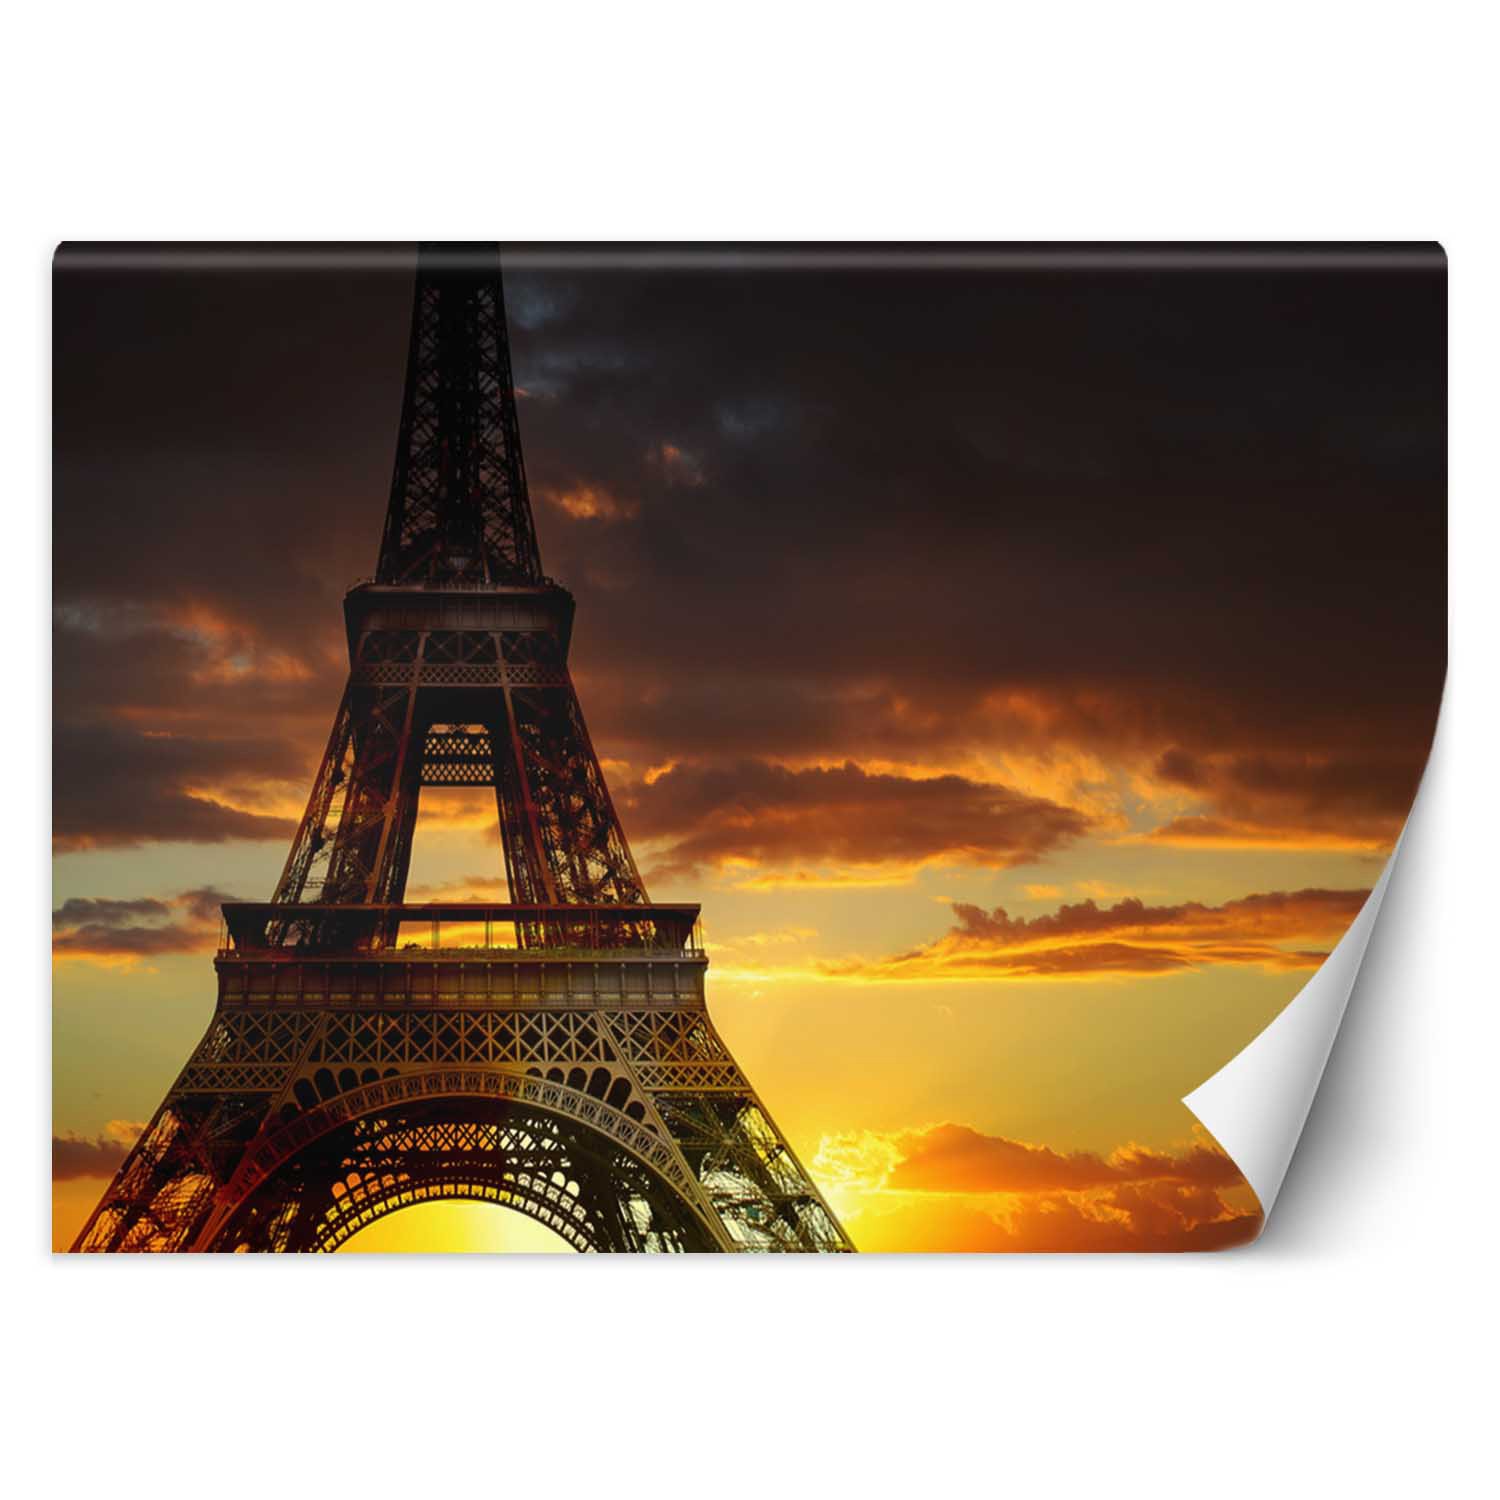 Trend24 – Behang – Eiffeltoren Bij Zonsondergang – Vliesbehang – Fotobehang – Behang Woonkamer – 400x280x2 cm – Incl. behanglijm